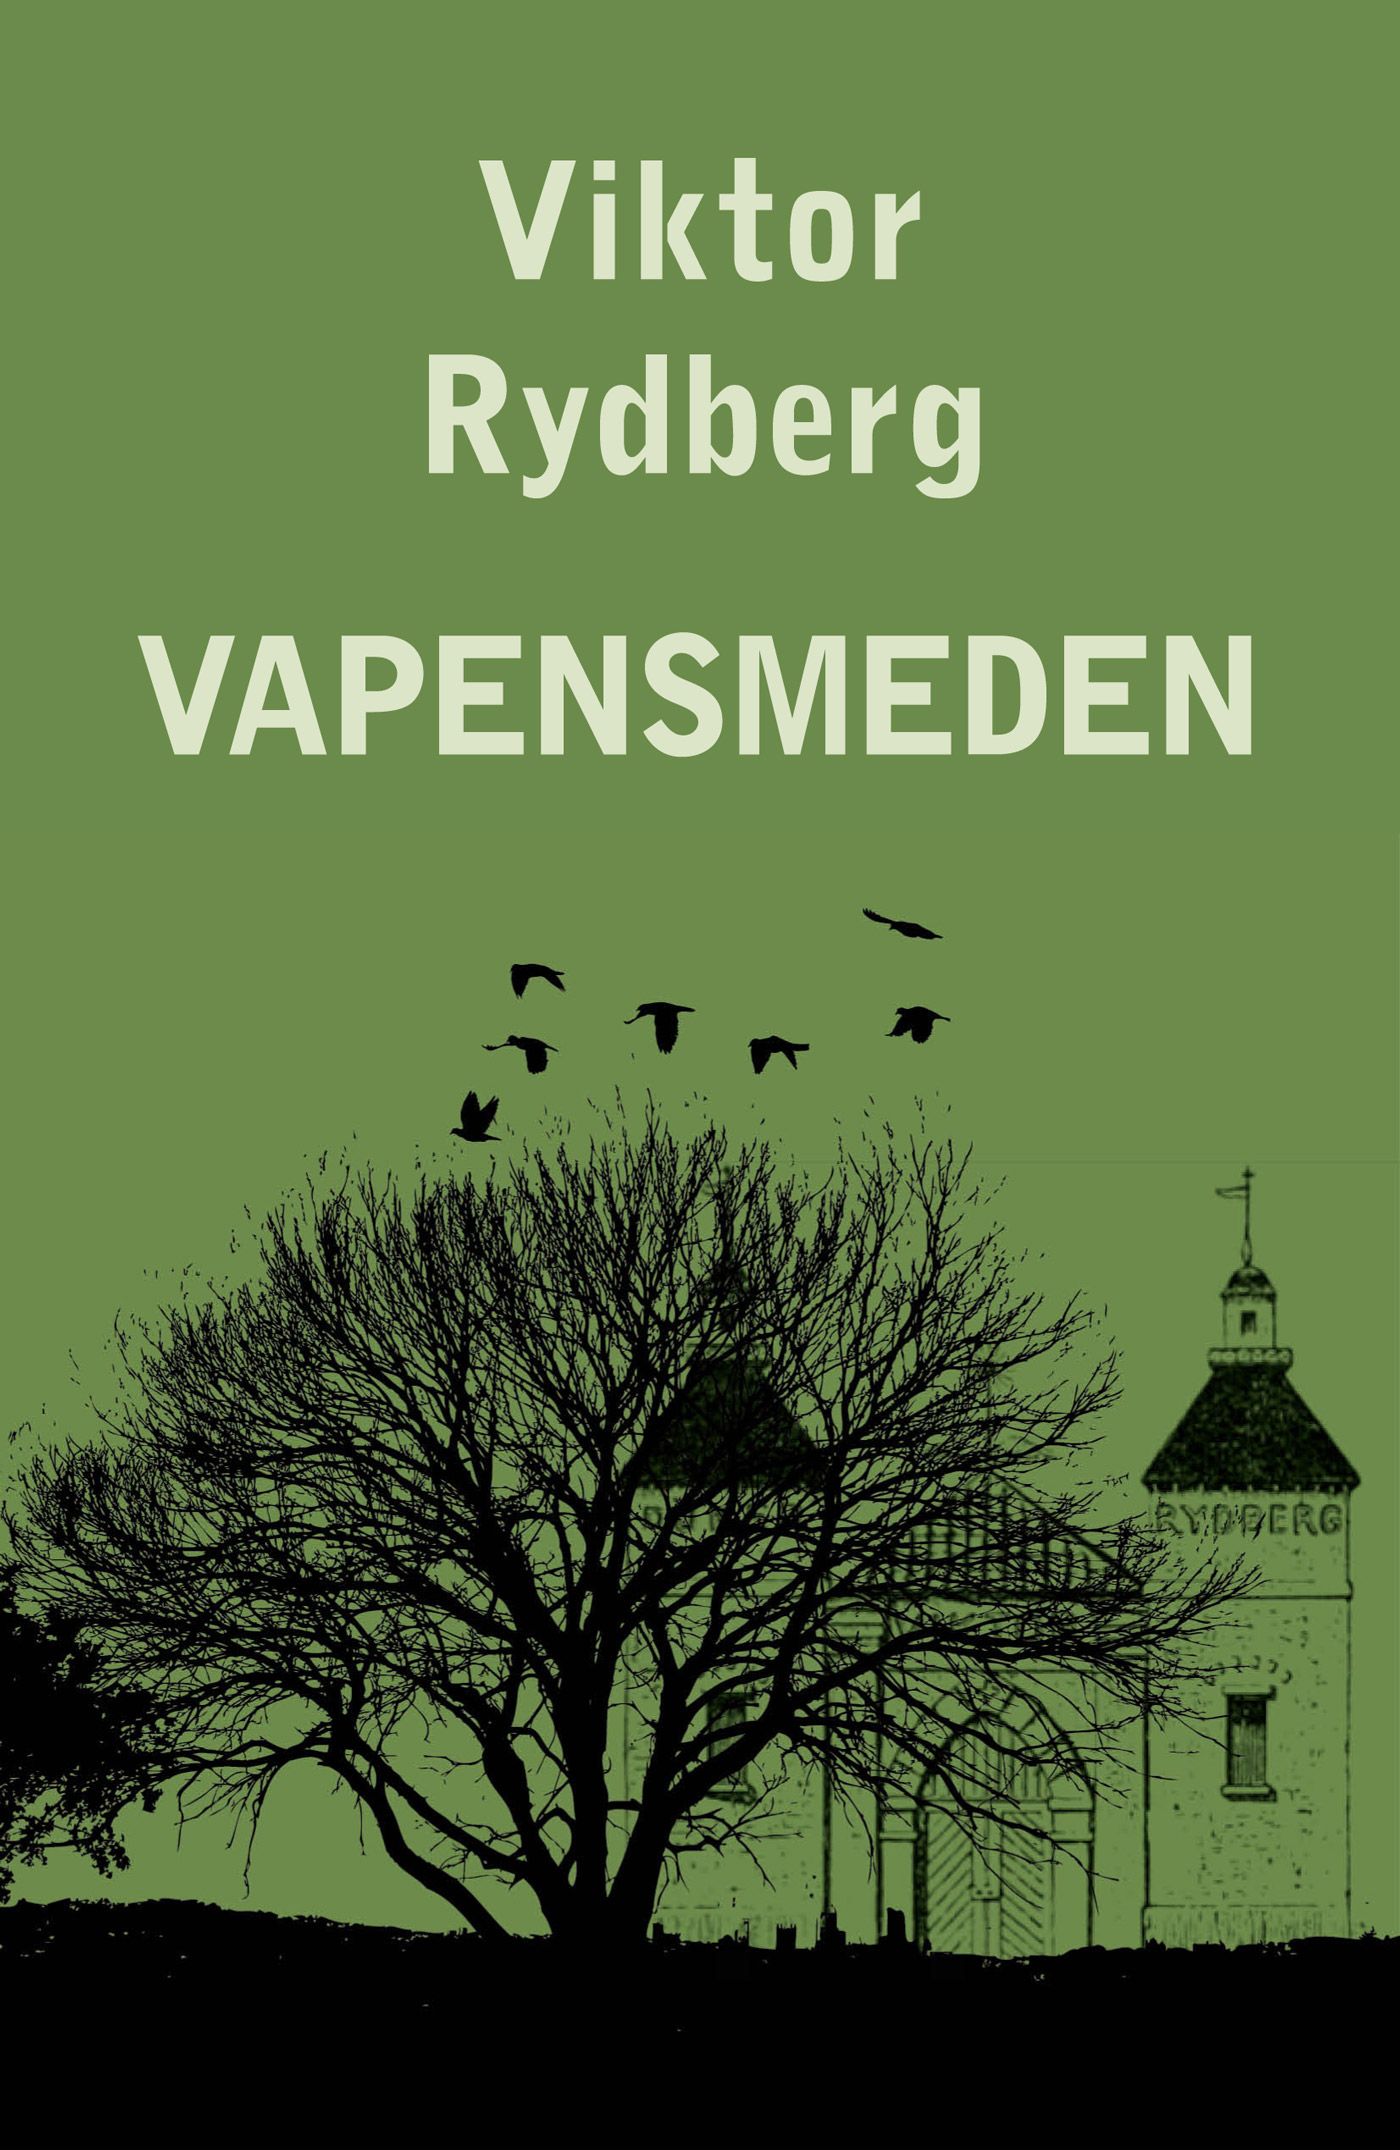 Vapensmeden, eBook by Viktor Rydberg